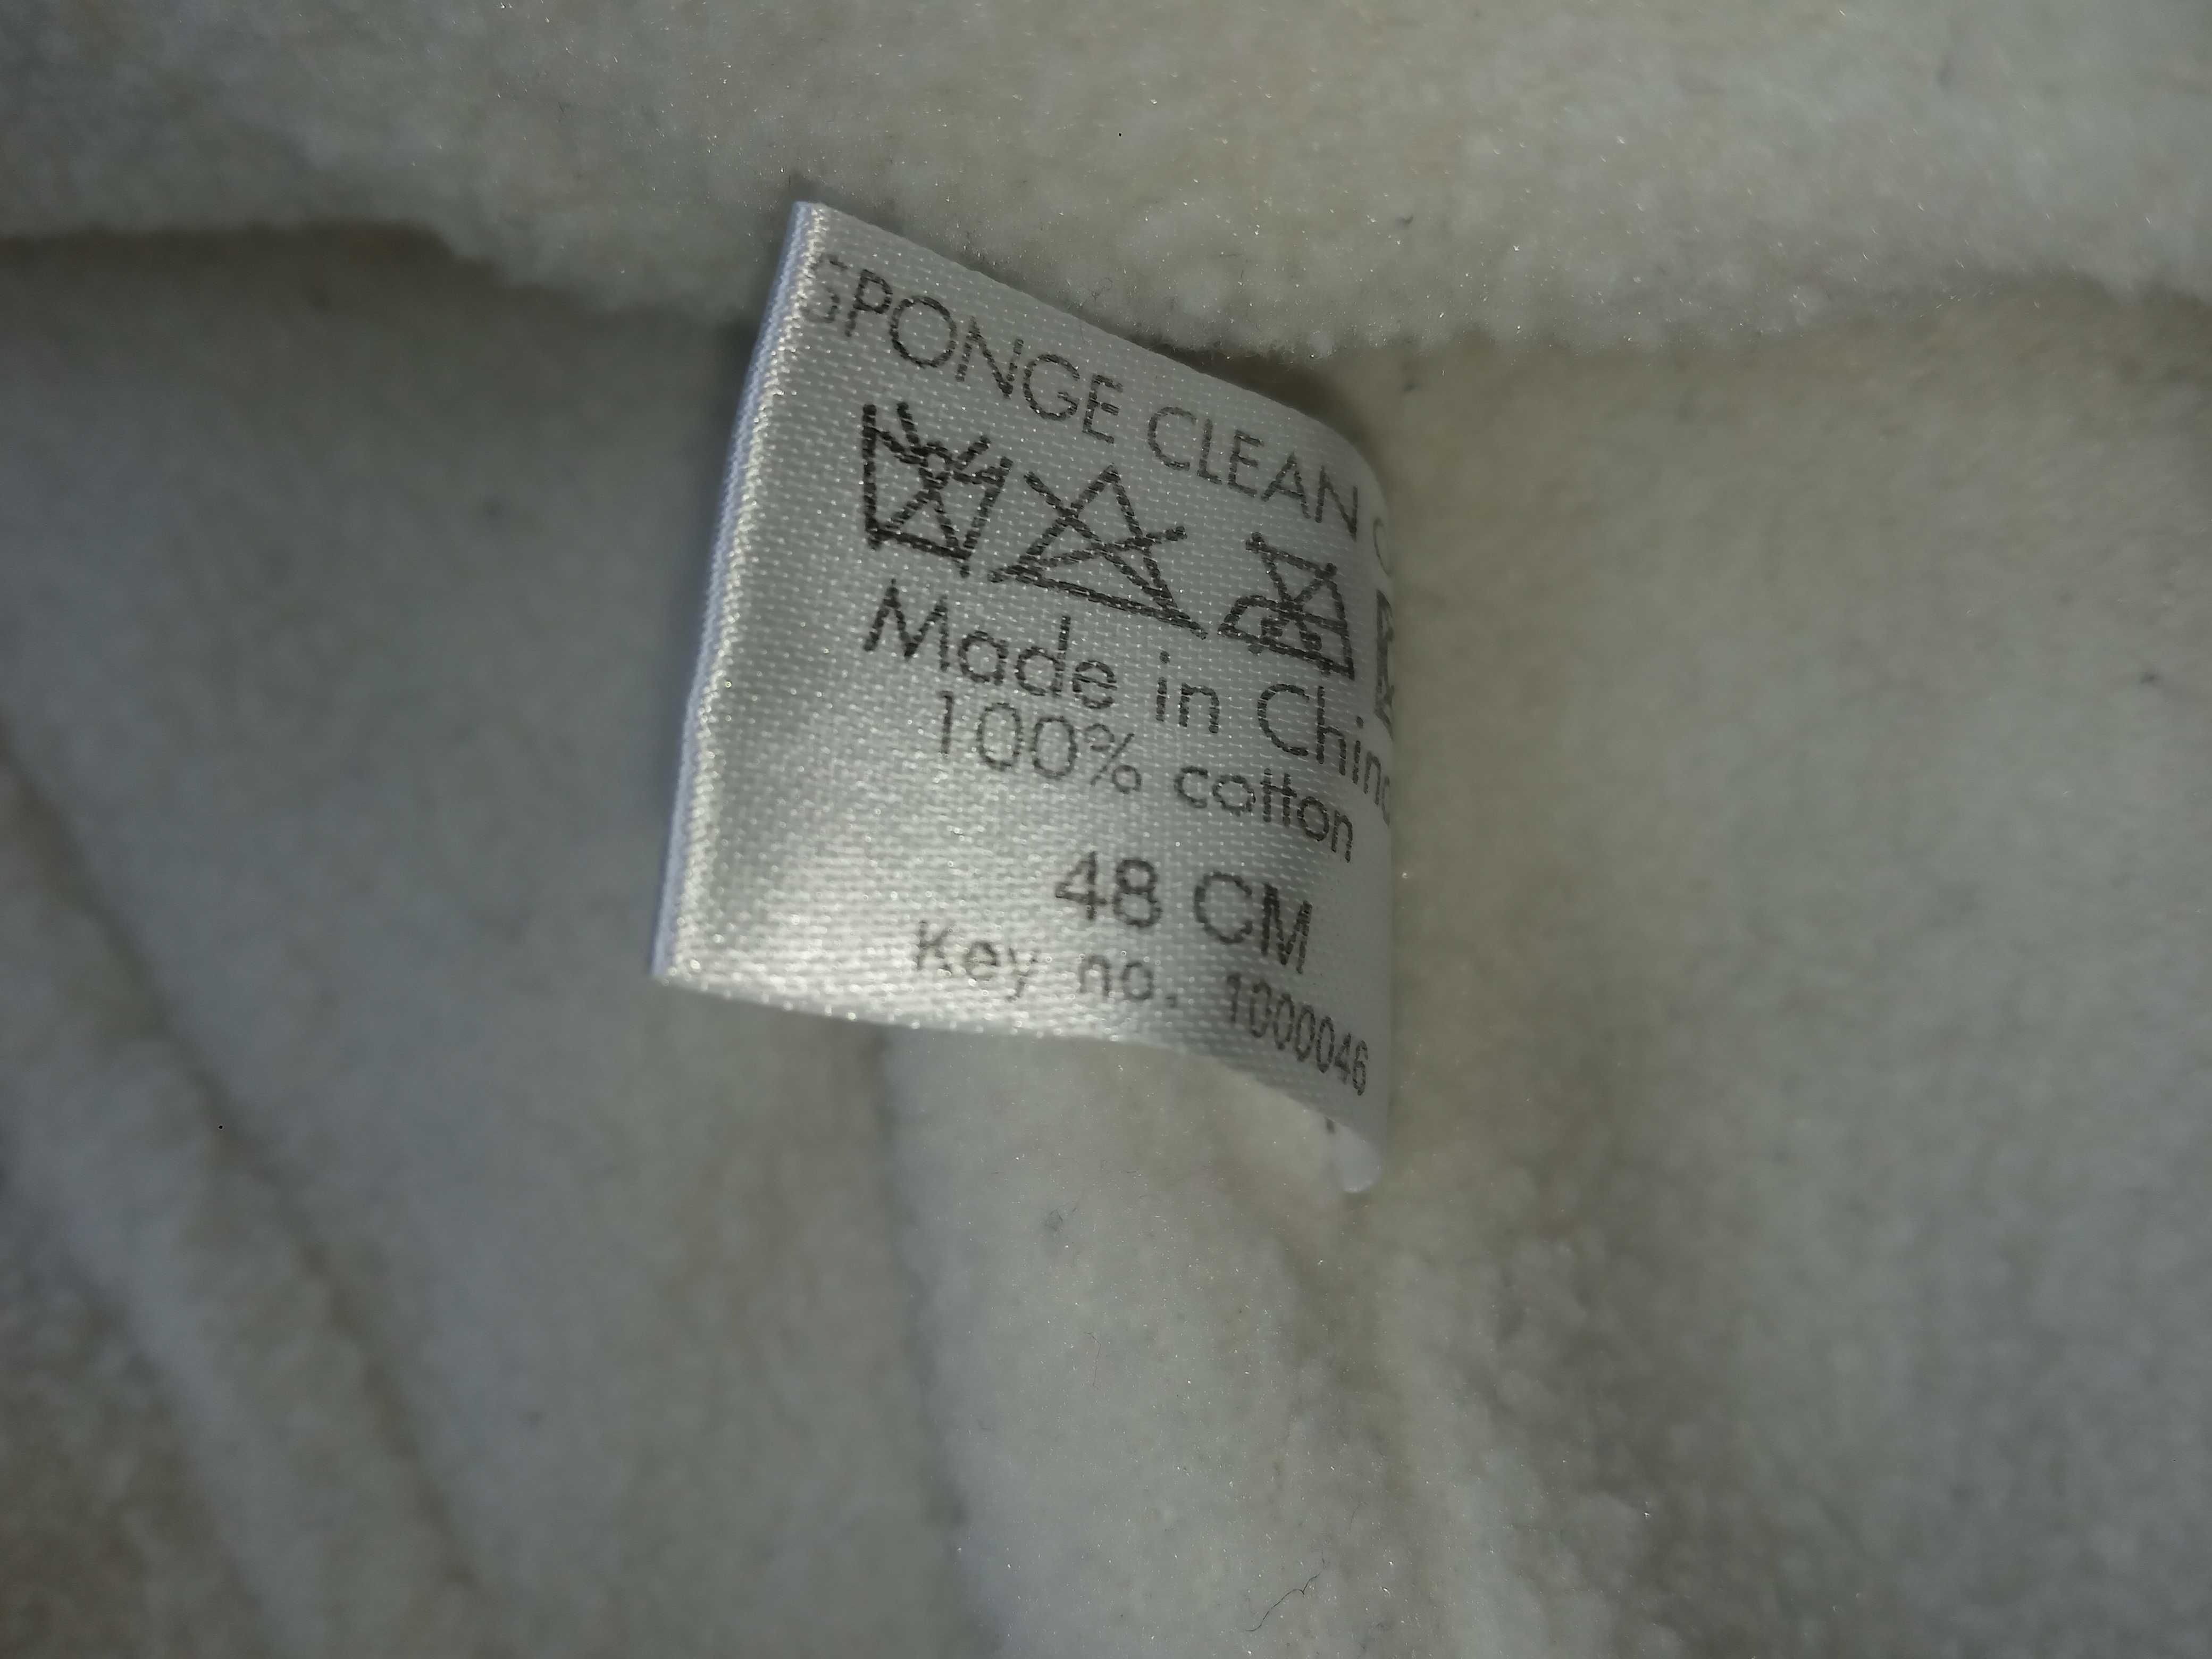 Czapka chłopięca  przejściowa na polarku, Kubuś Puchatek, r. 48 cm